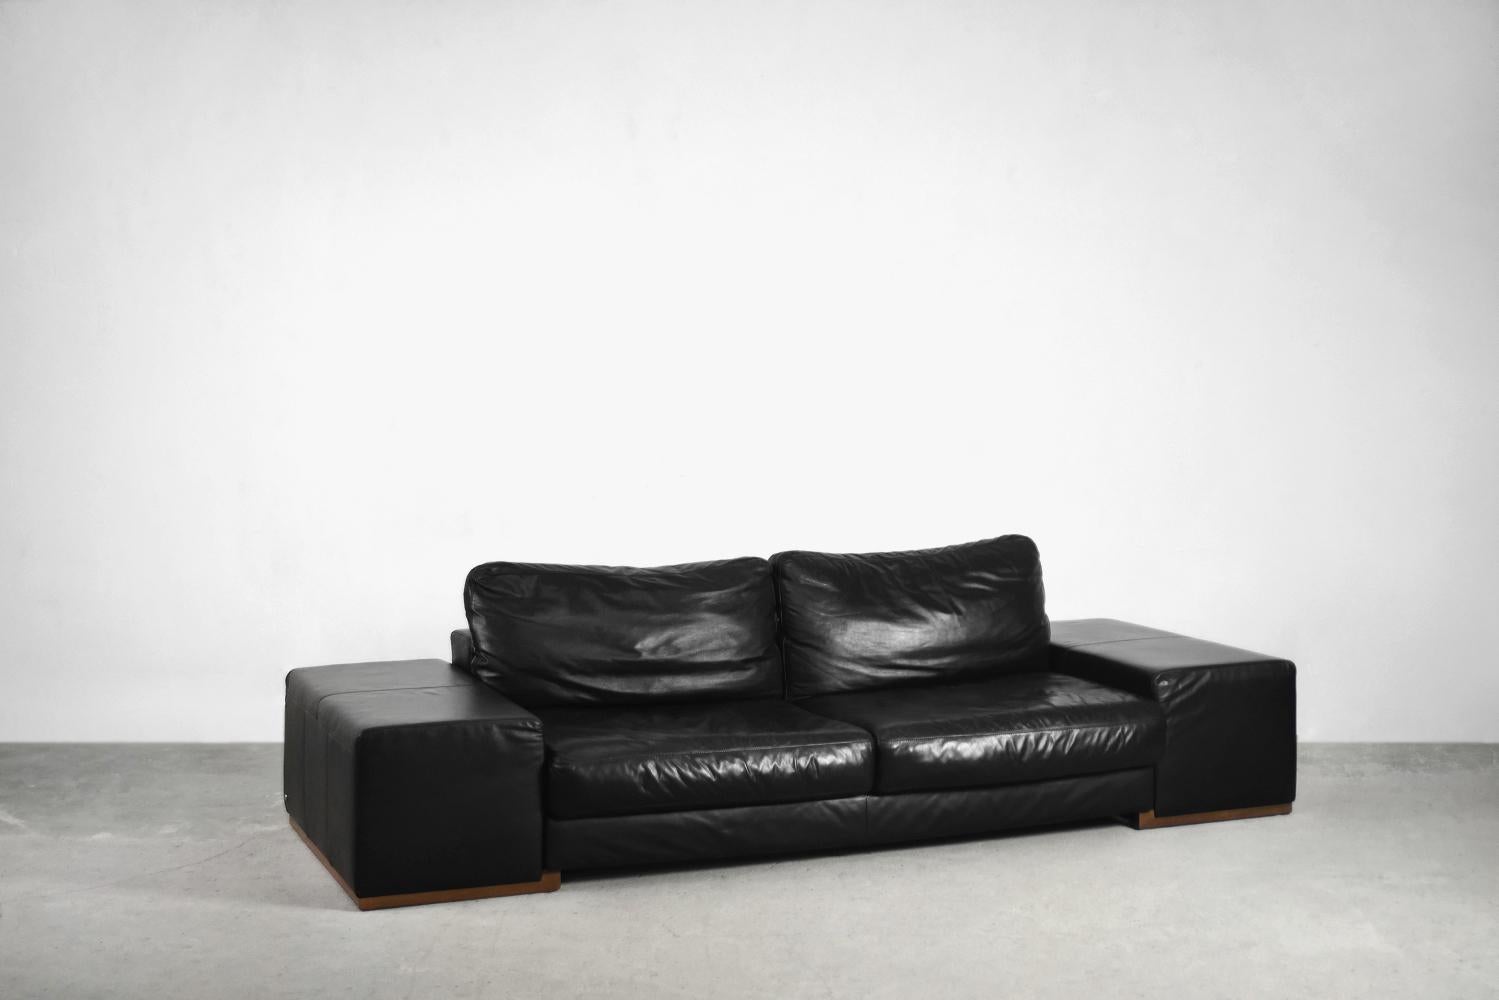 Dieses atemberaubende Sofa wurde in Italien von Natuzzi hergestellt, einer kleinen Werkstatt, die 1959 in Apulien gegründet wurde und sich zu einer weltweiten Manufaktur entwickelt hat. Dieses Inline-Modell wurde vom Natuzzi Design Center entworfen.